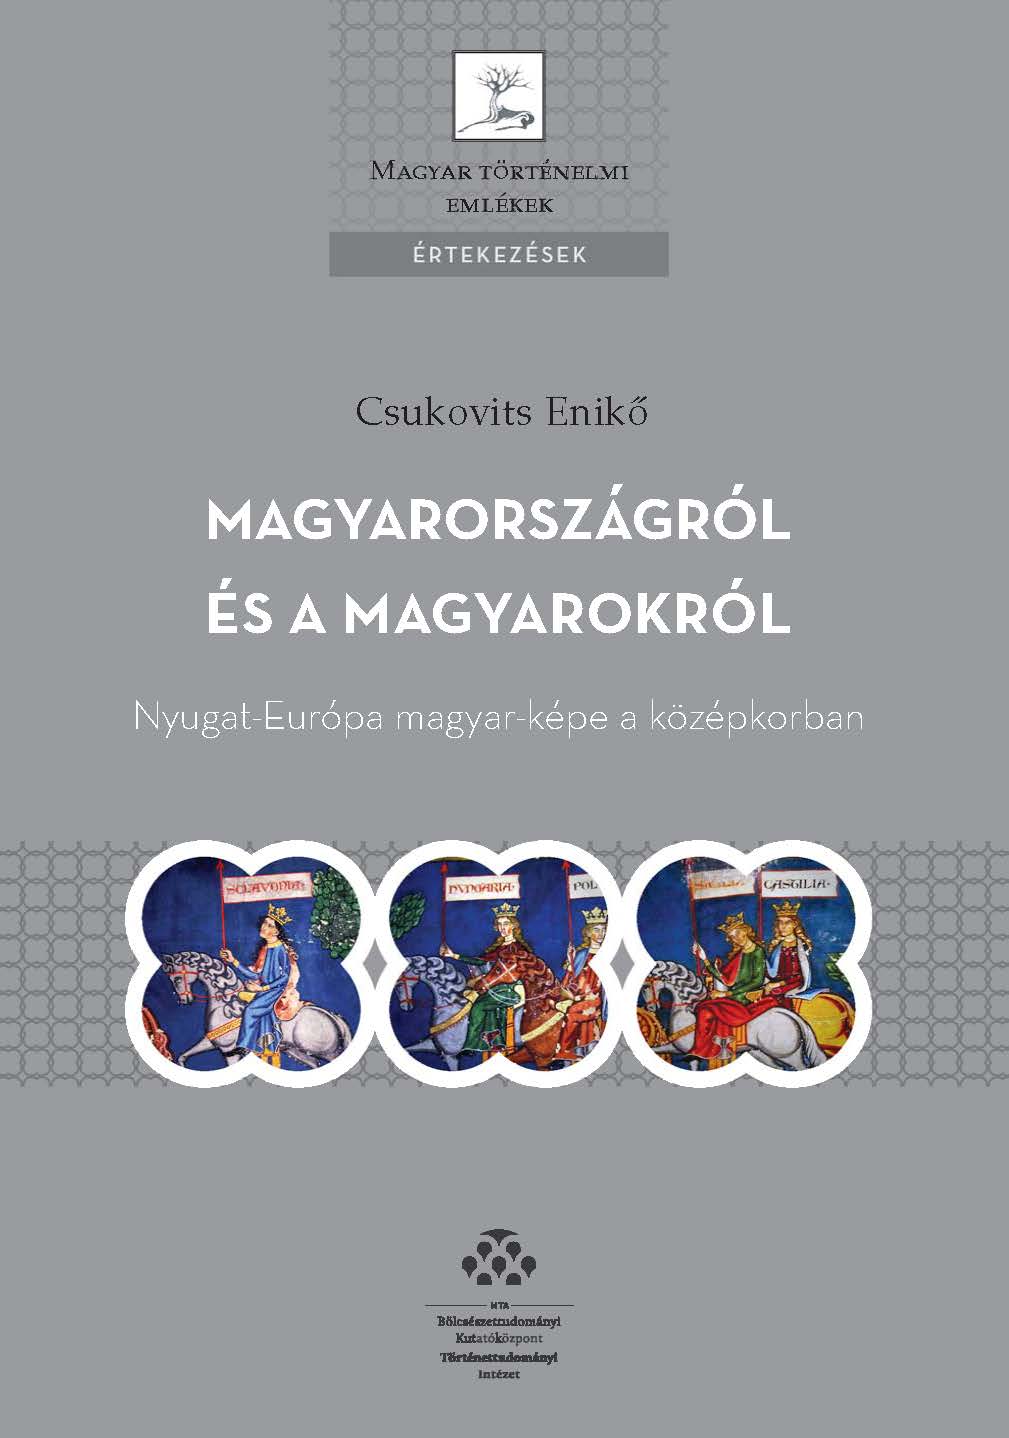 Csukovits Enikő könyvének bemutatója